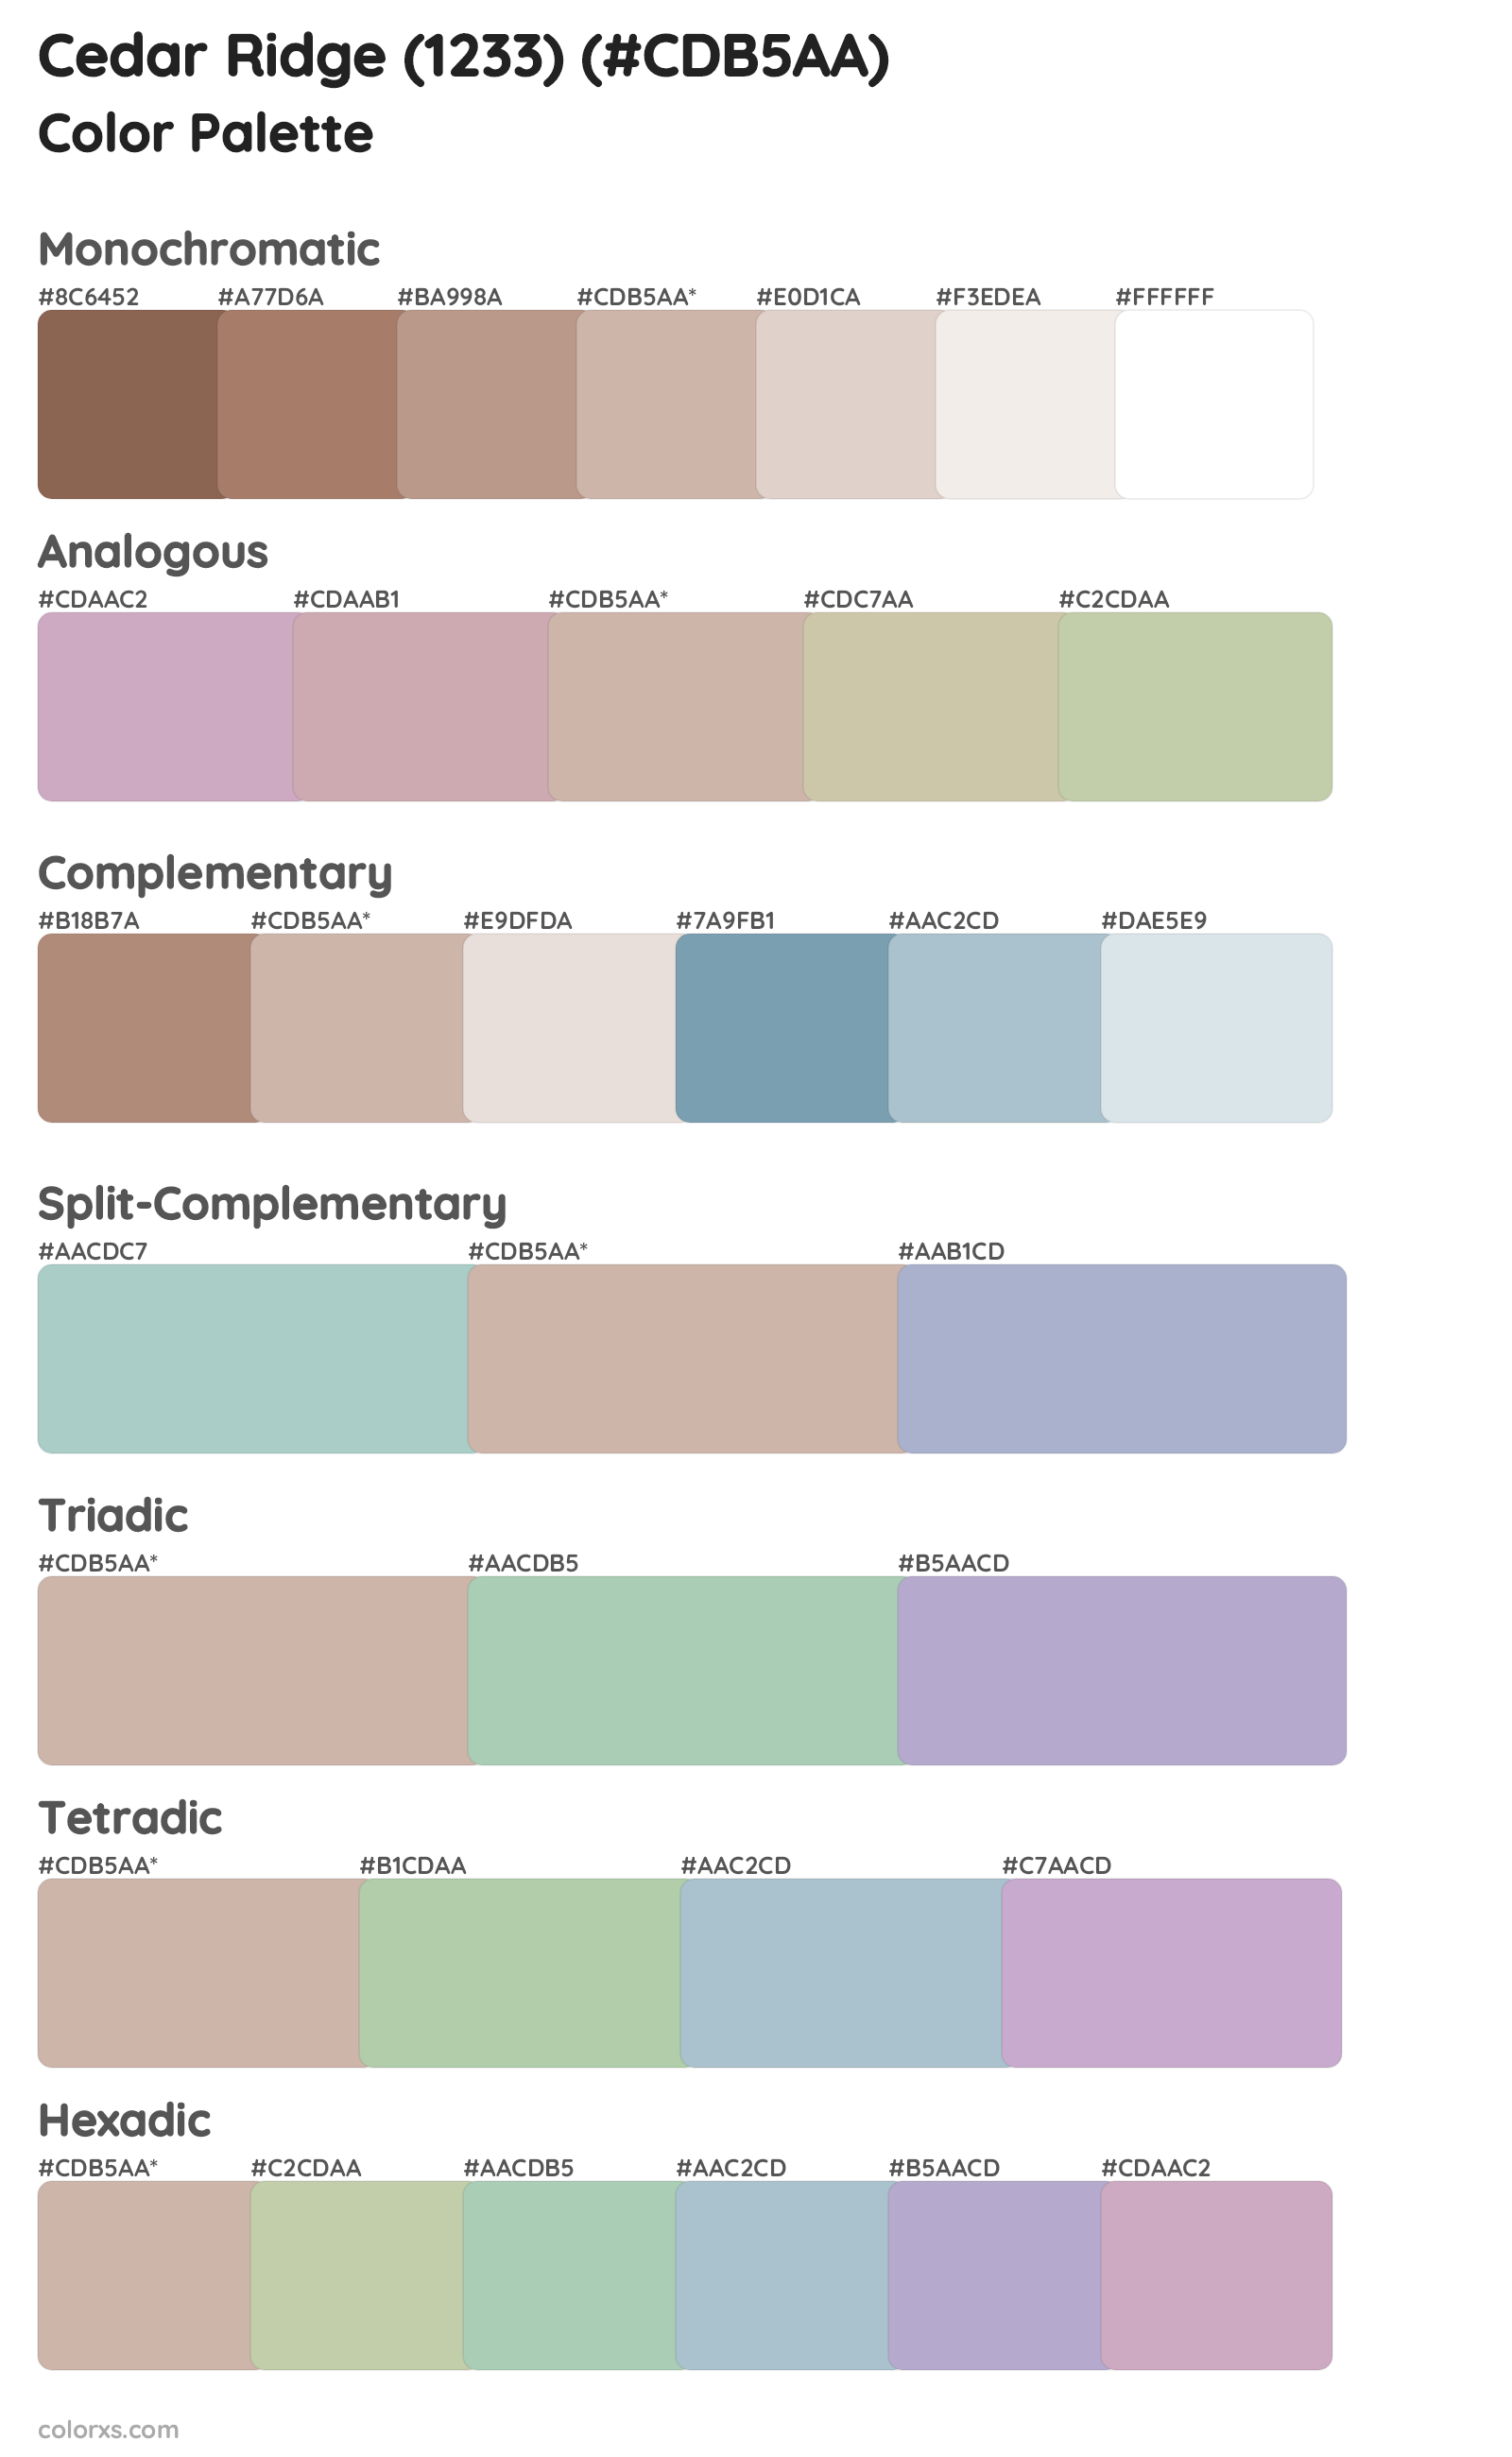 Cedar Ridge (1233) Color Scheme Palettes